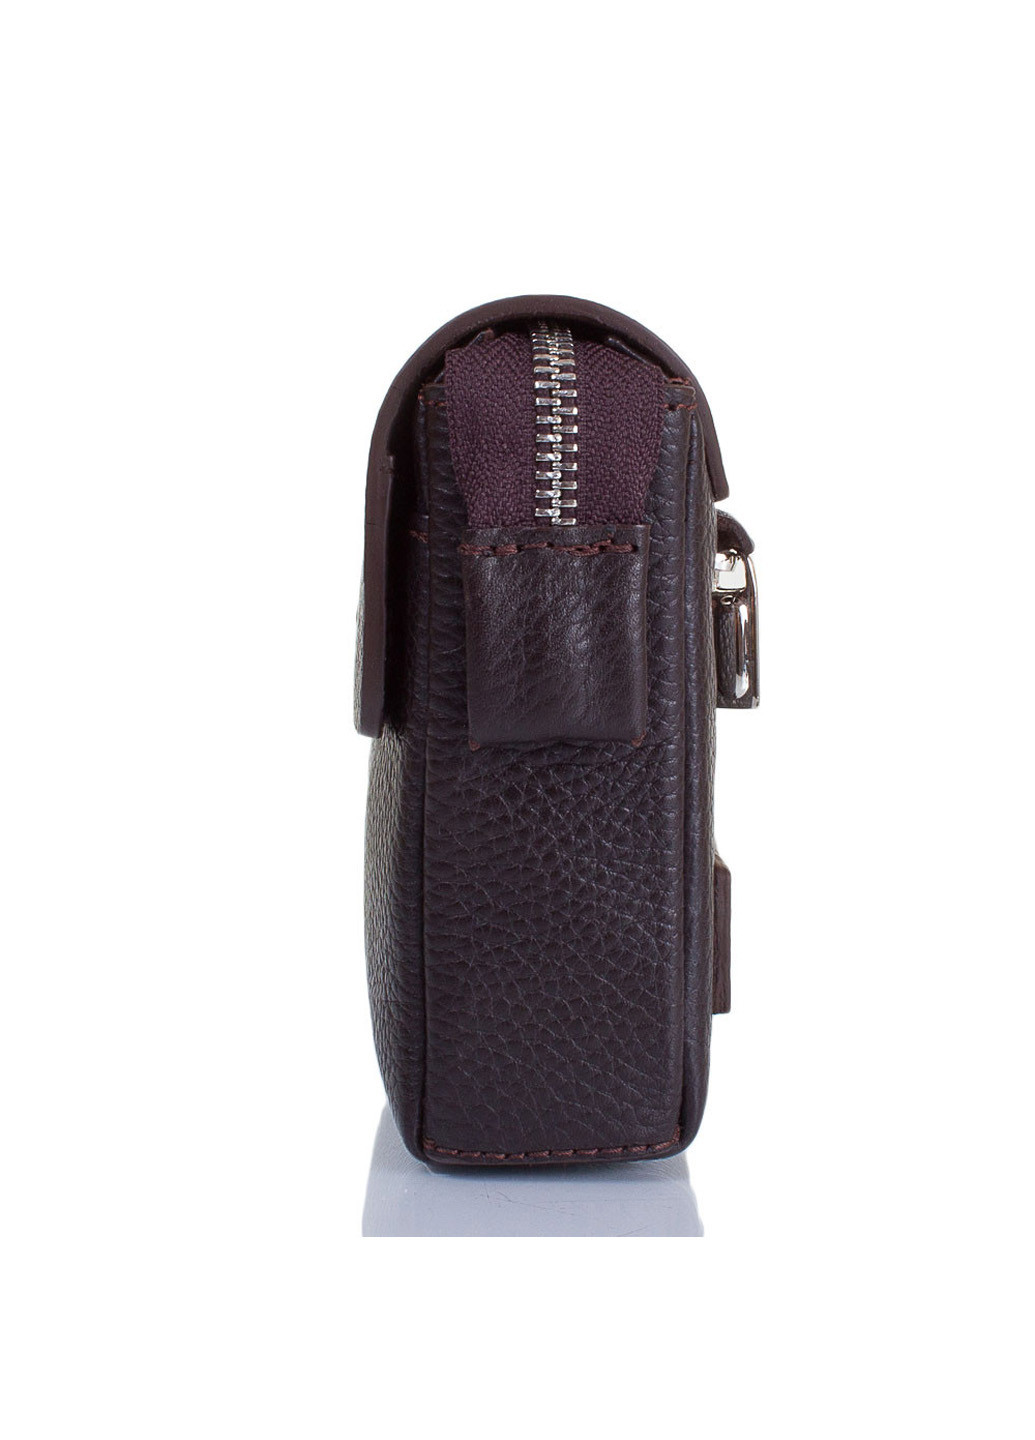 Чоловіча шкіряна борсетки-гаманець 20,5х14,5х4,5 см Karlet (195547119)